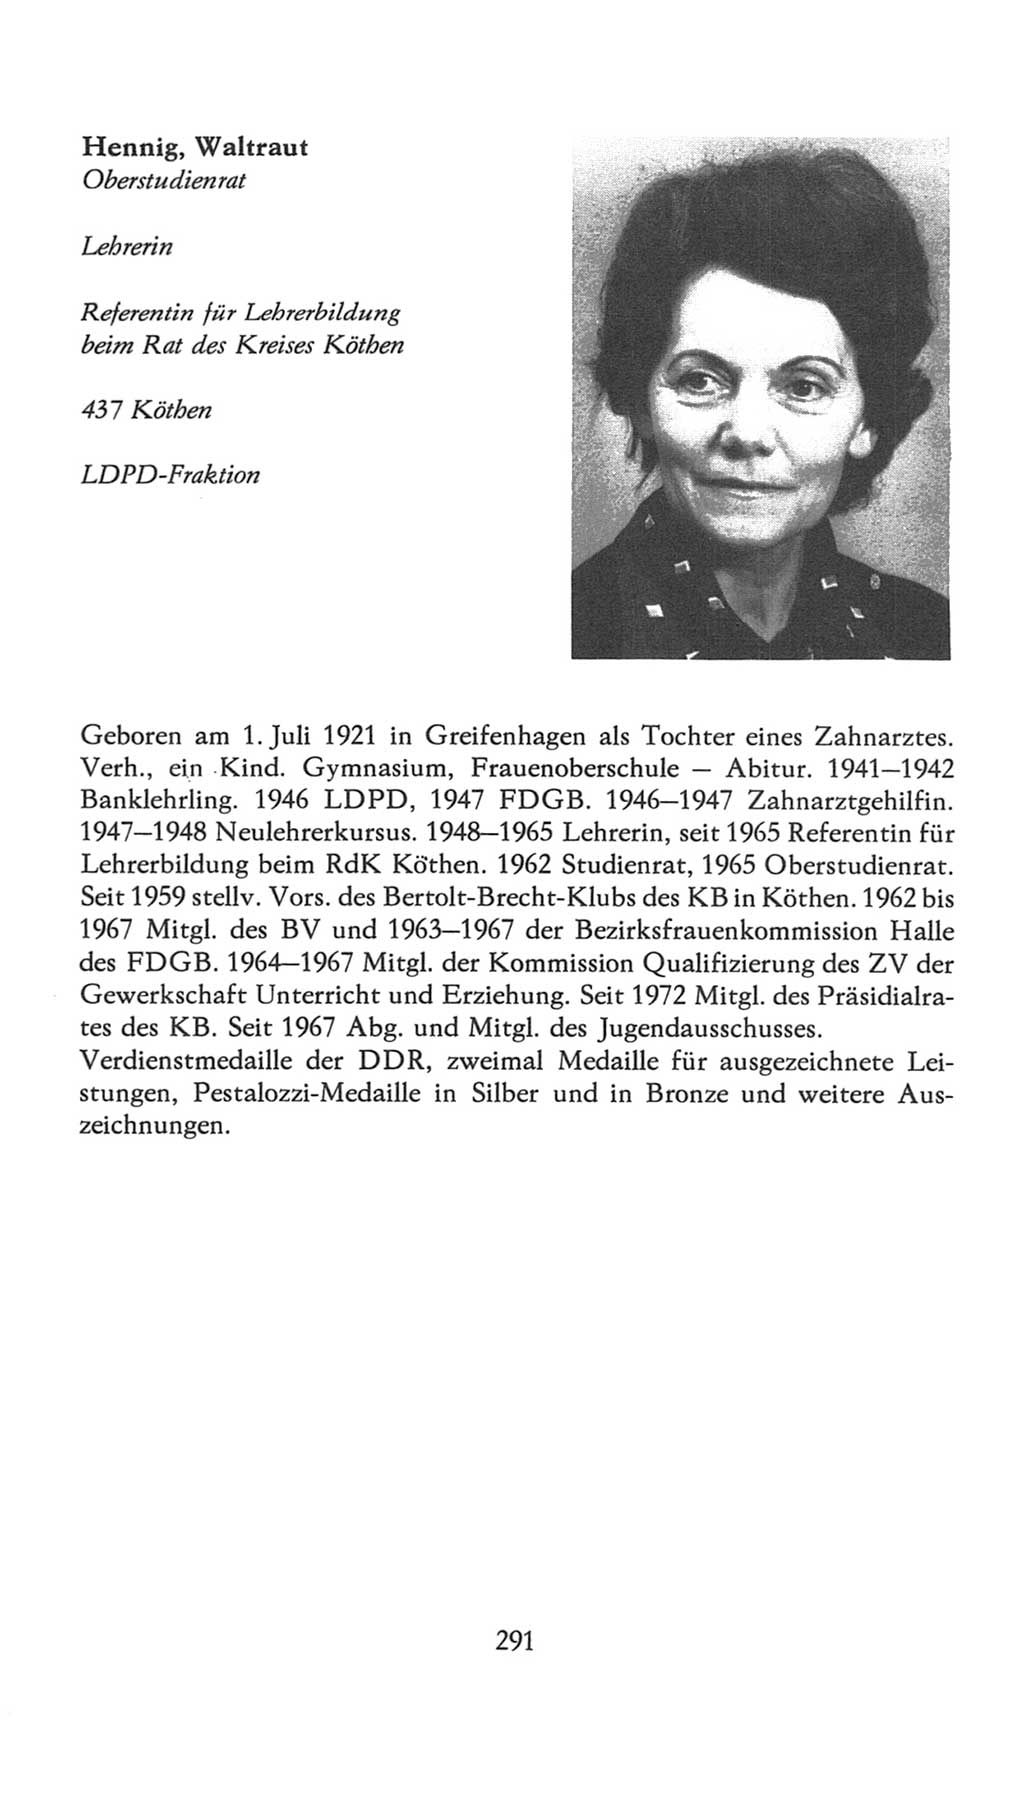 Volkskammer (VK) der Deutschen Demokratischen Republik (DDR), 7. Wahlperiode 1976-1981, Seite 291 (VK. DDR 7. WP. 1976-1981, S. 291)